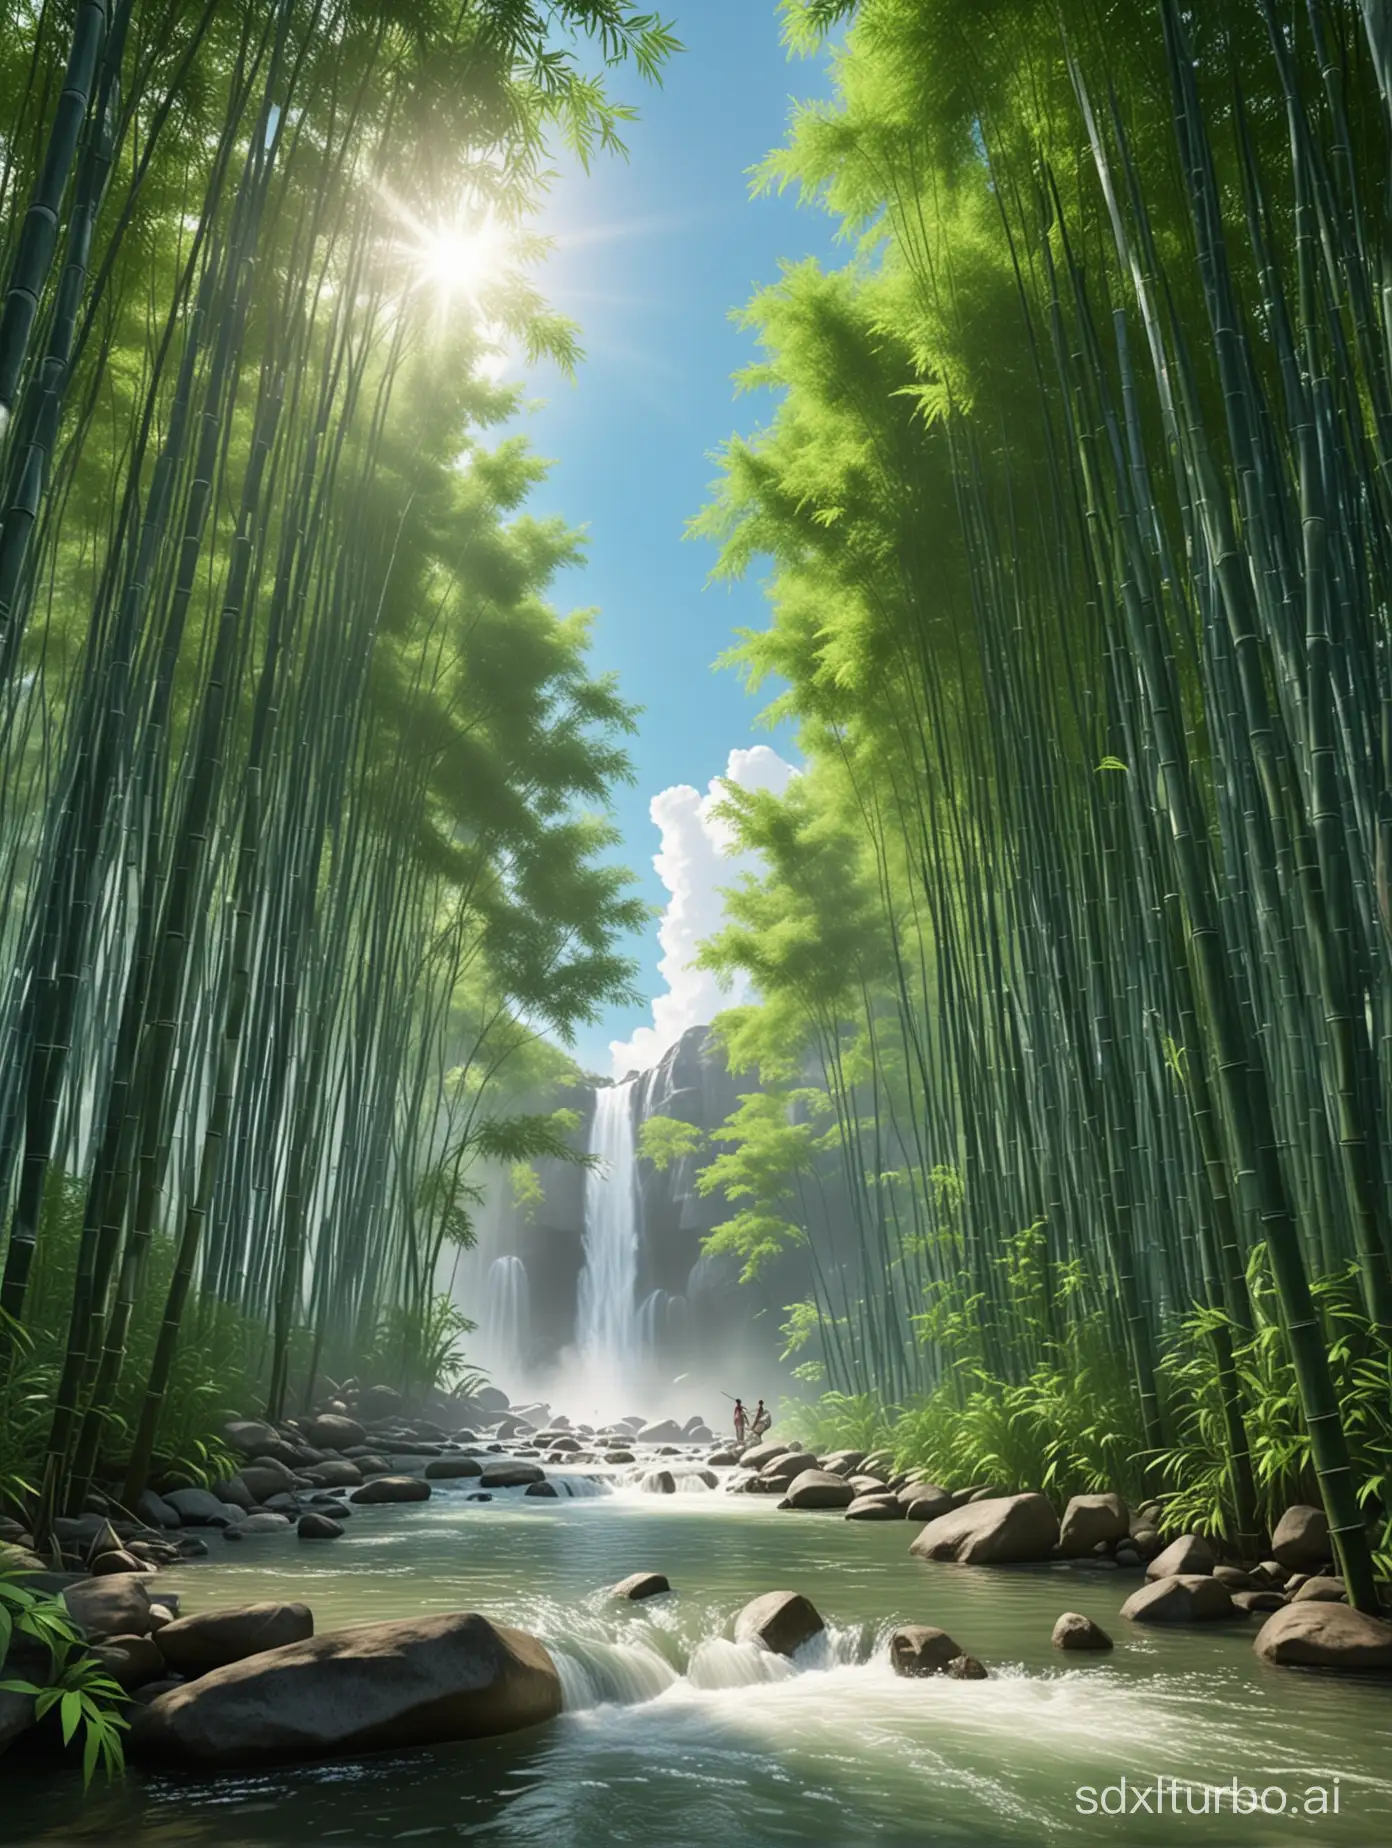 青い空と白い雲, (竹林), 湖, 滝人. 柔らかい竹が緑に染まる, 木陰が太陽を遮る, 滝飛行、湧き出る湧き水,最高の品質を最高に, 超詳細, 最高の影,8k,公式アート